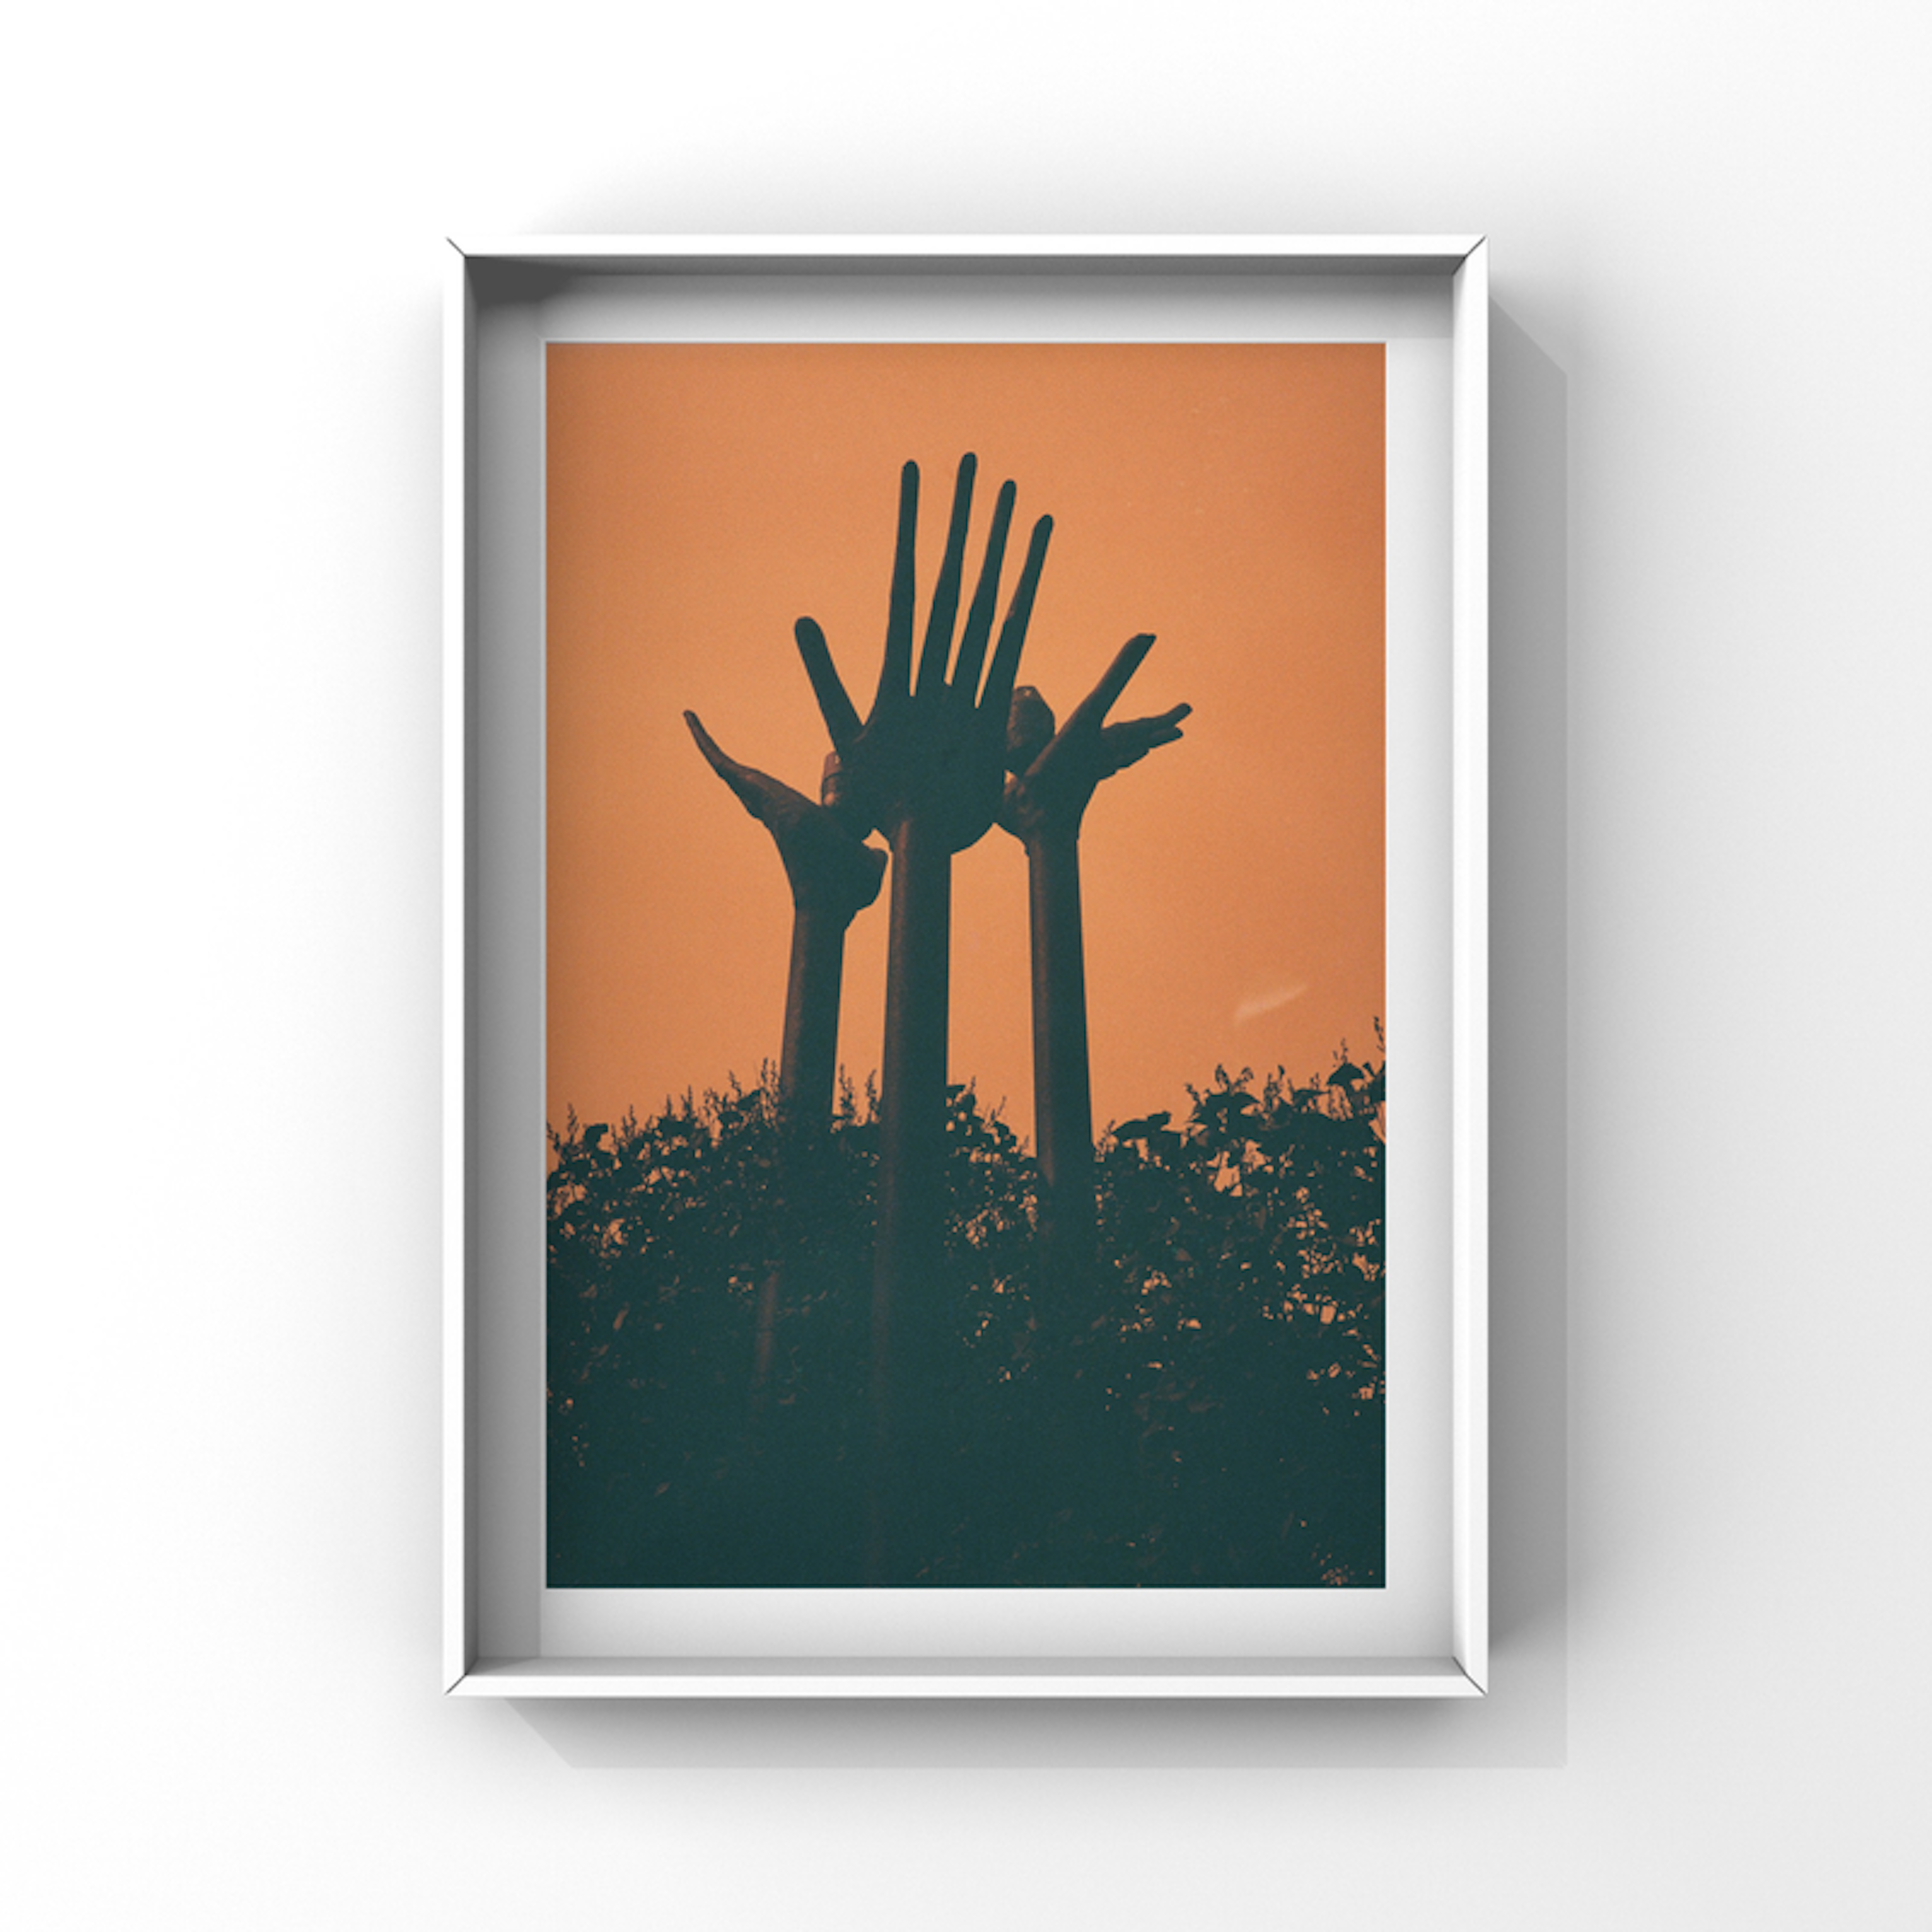 Hands towards an orange sky